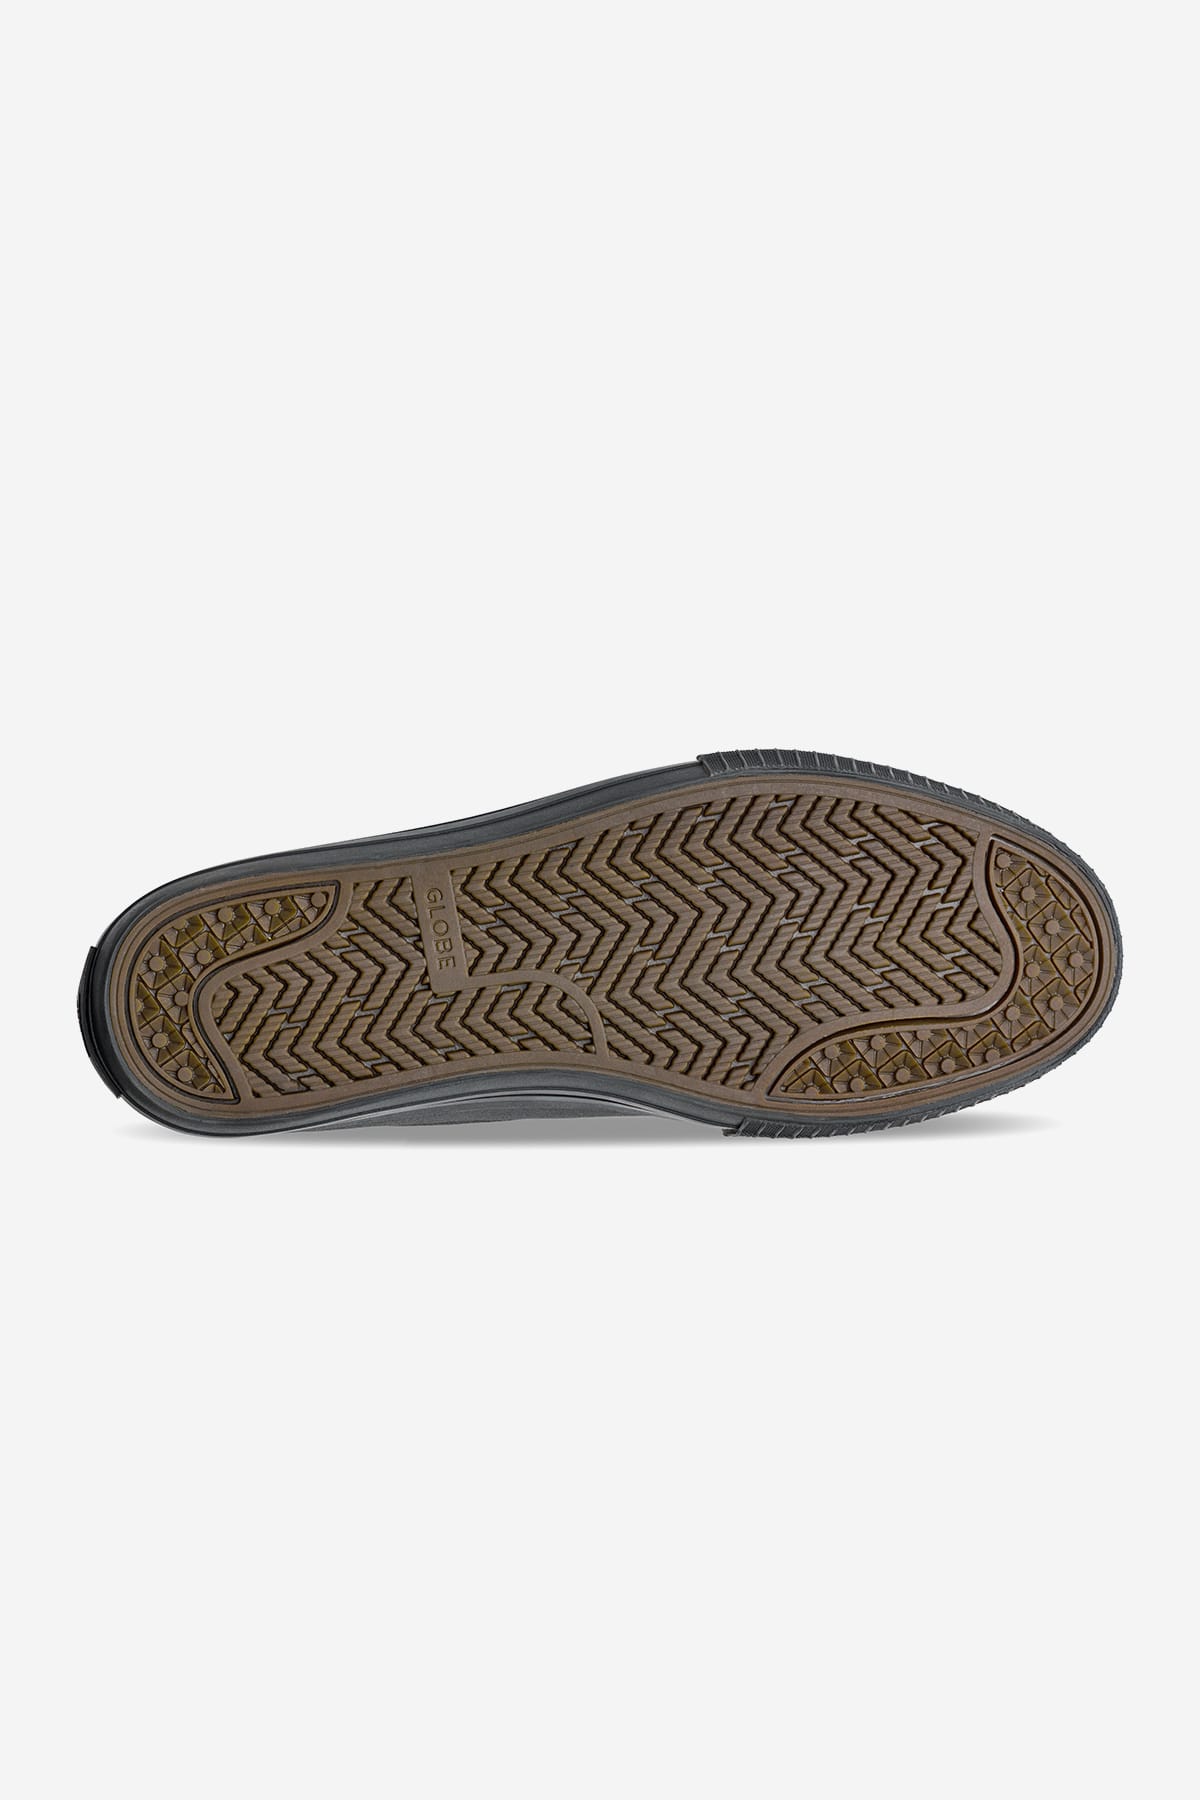 Globe - Gillette - Black/Black Wildleder - skateboard Schuhe